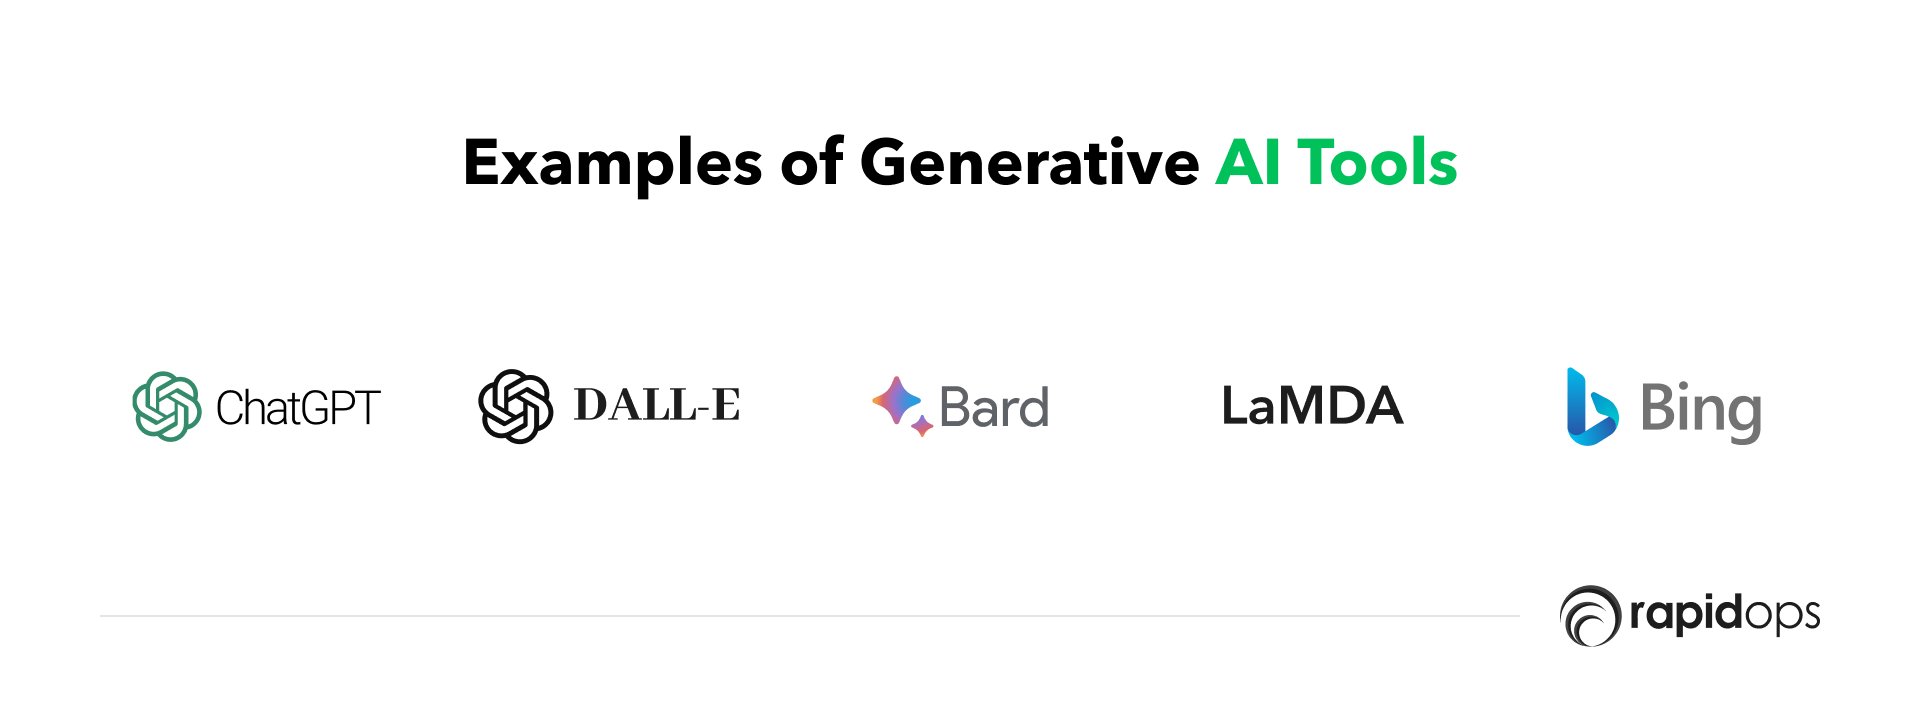 Examples of generative AI tools